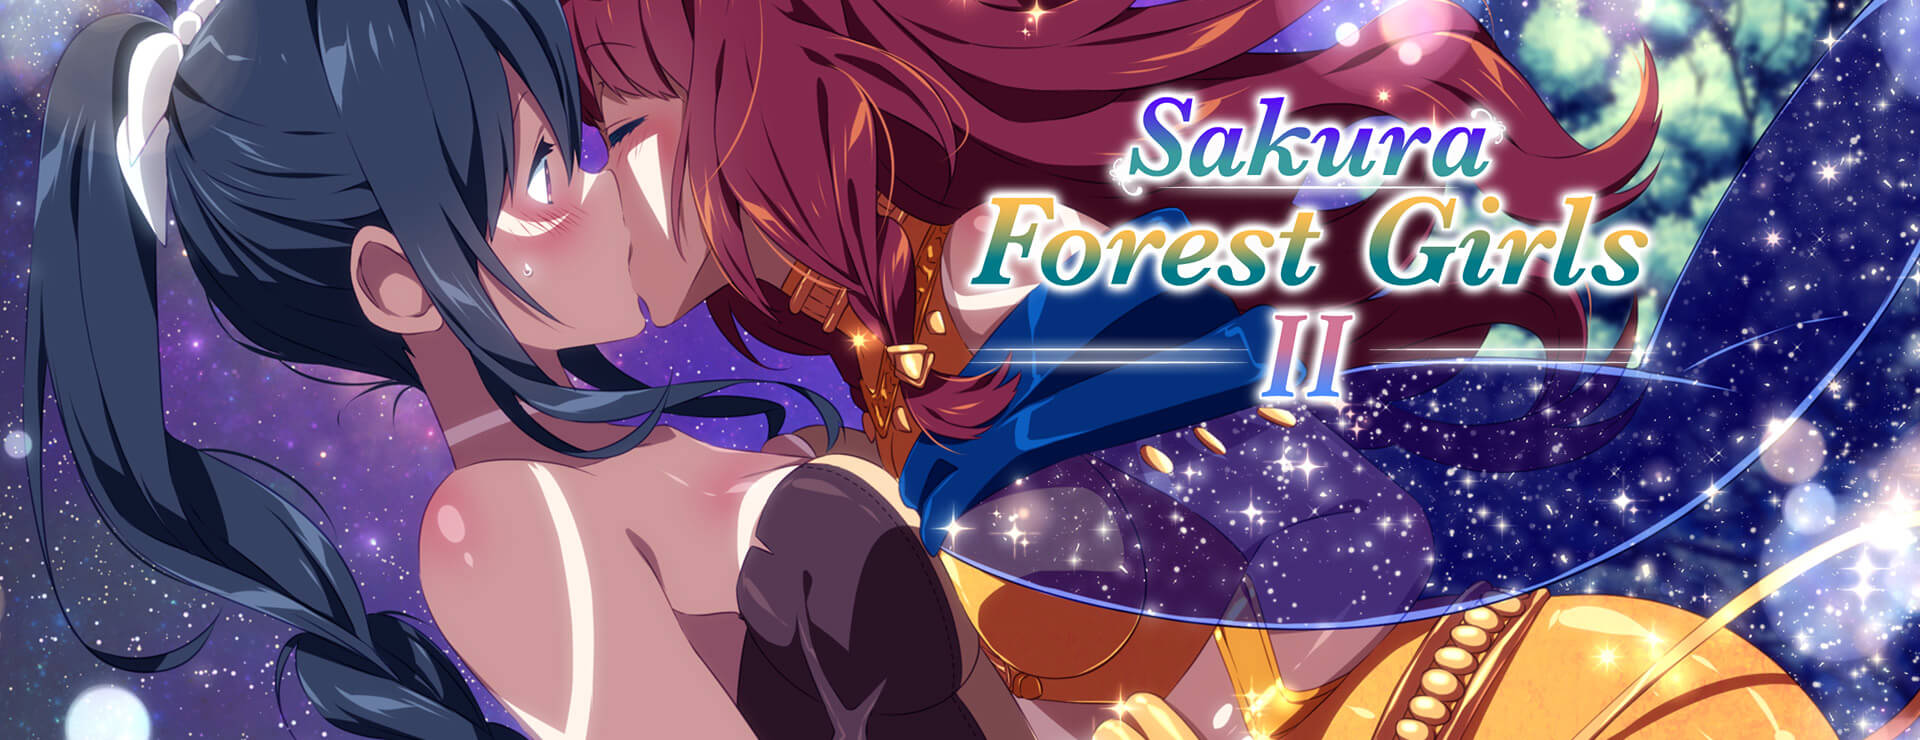 Sakura Forest Girls 2 - Visual Novel Game